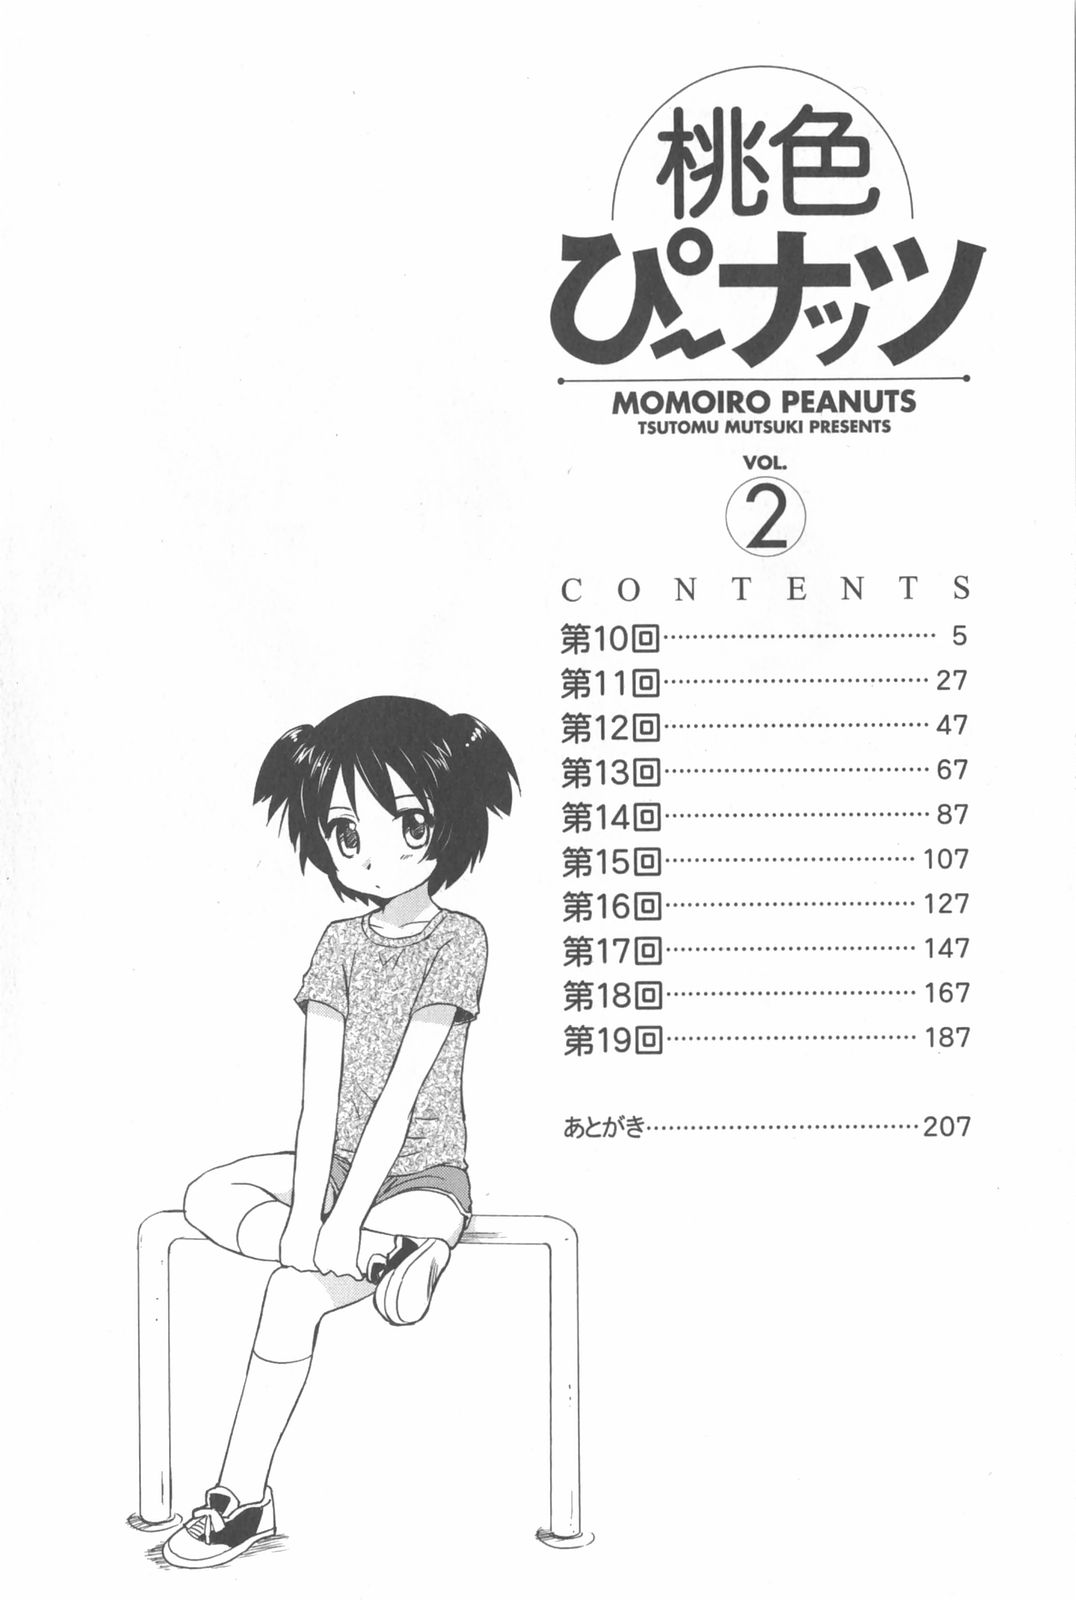 [Mutsuki Tsutomu] Momoiro Peanuts Vol. 2 page 7 full